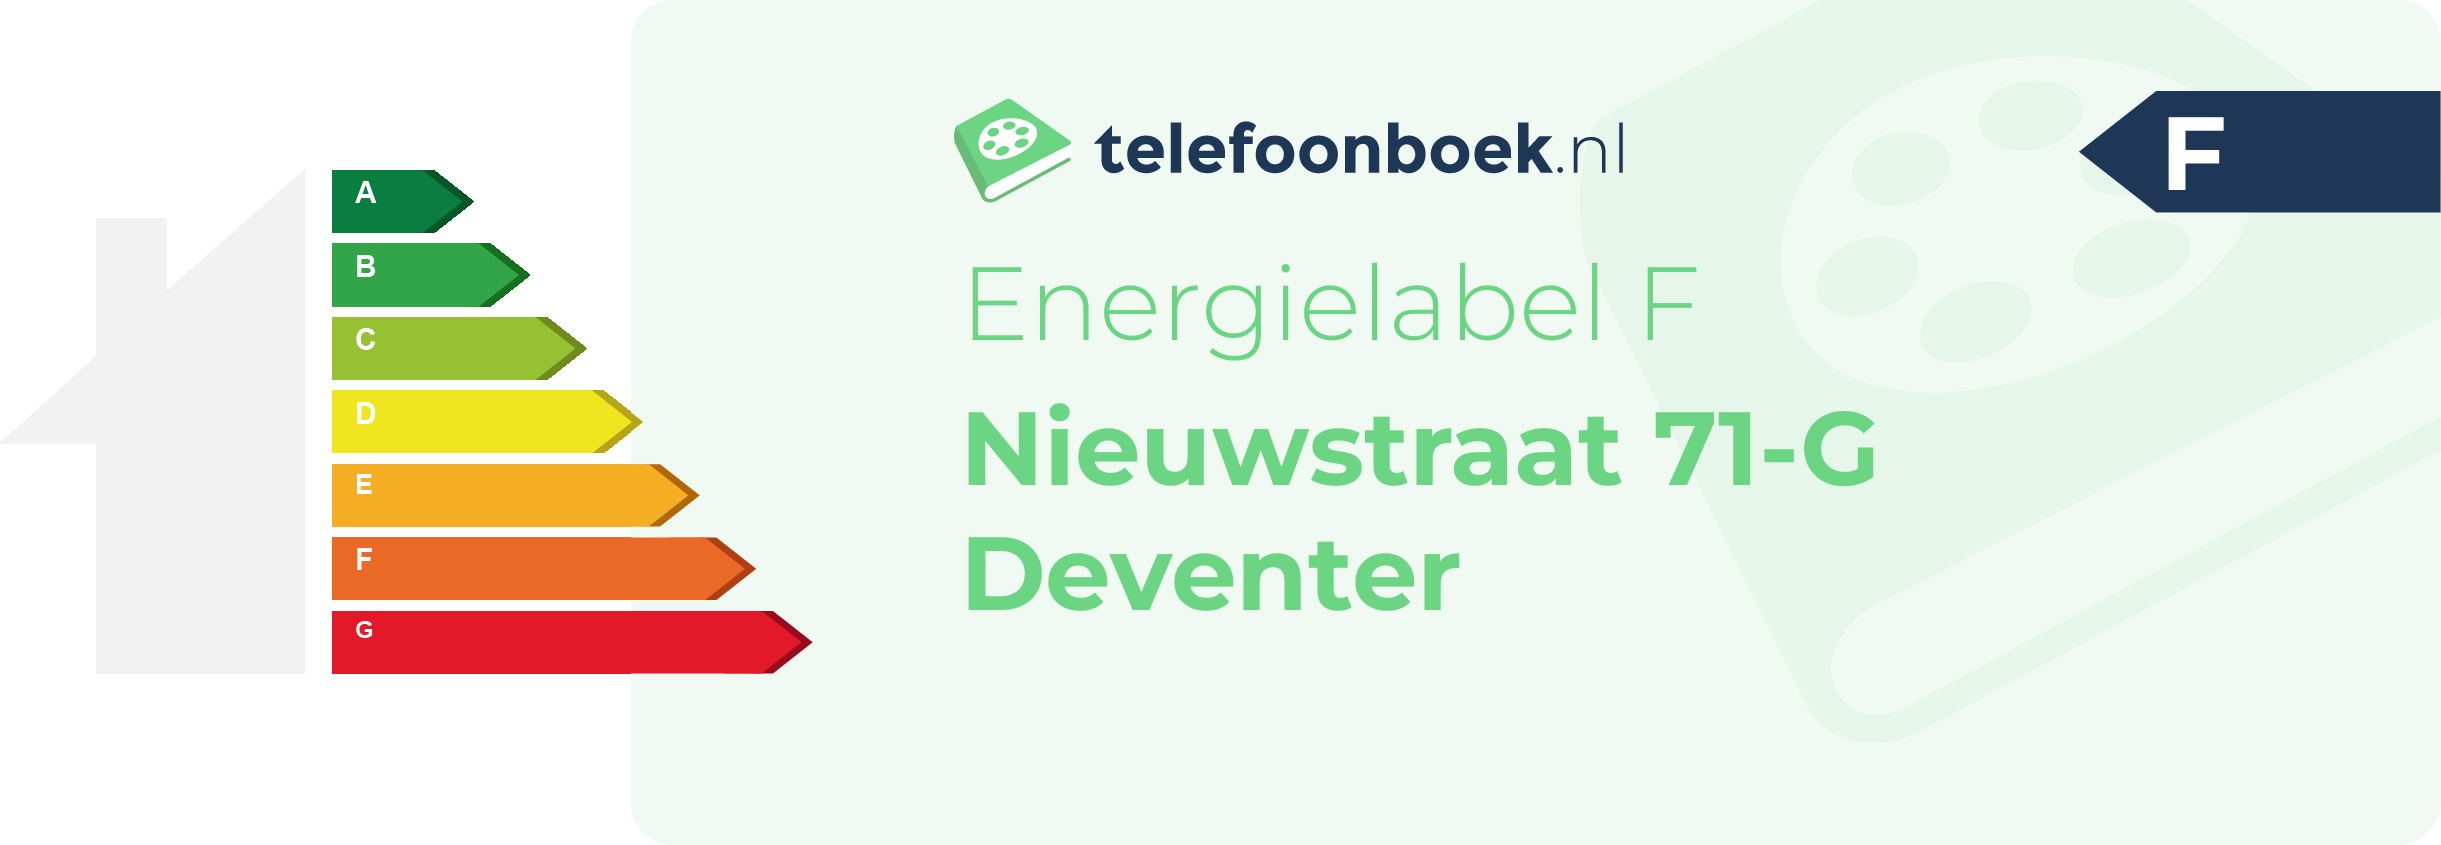 Energielabel Nieuwstraat 71-G Deventer